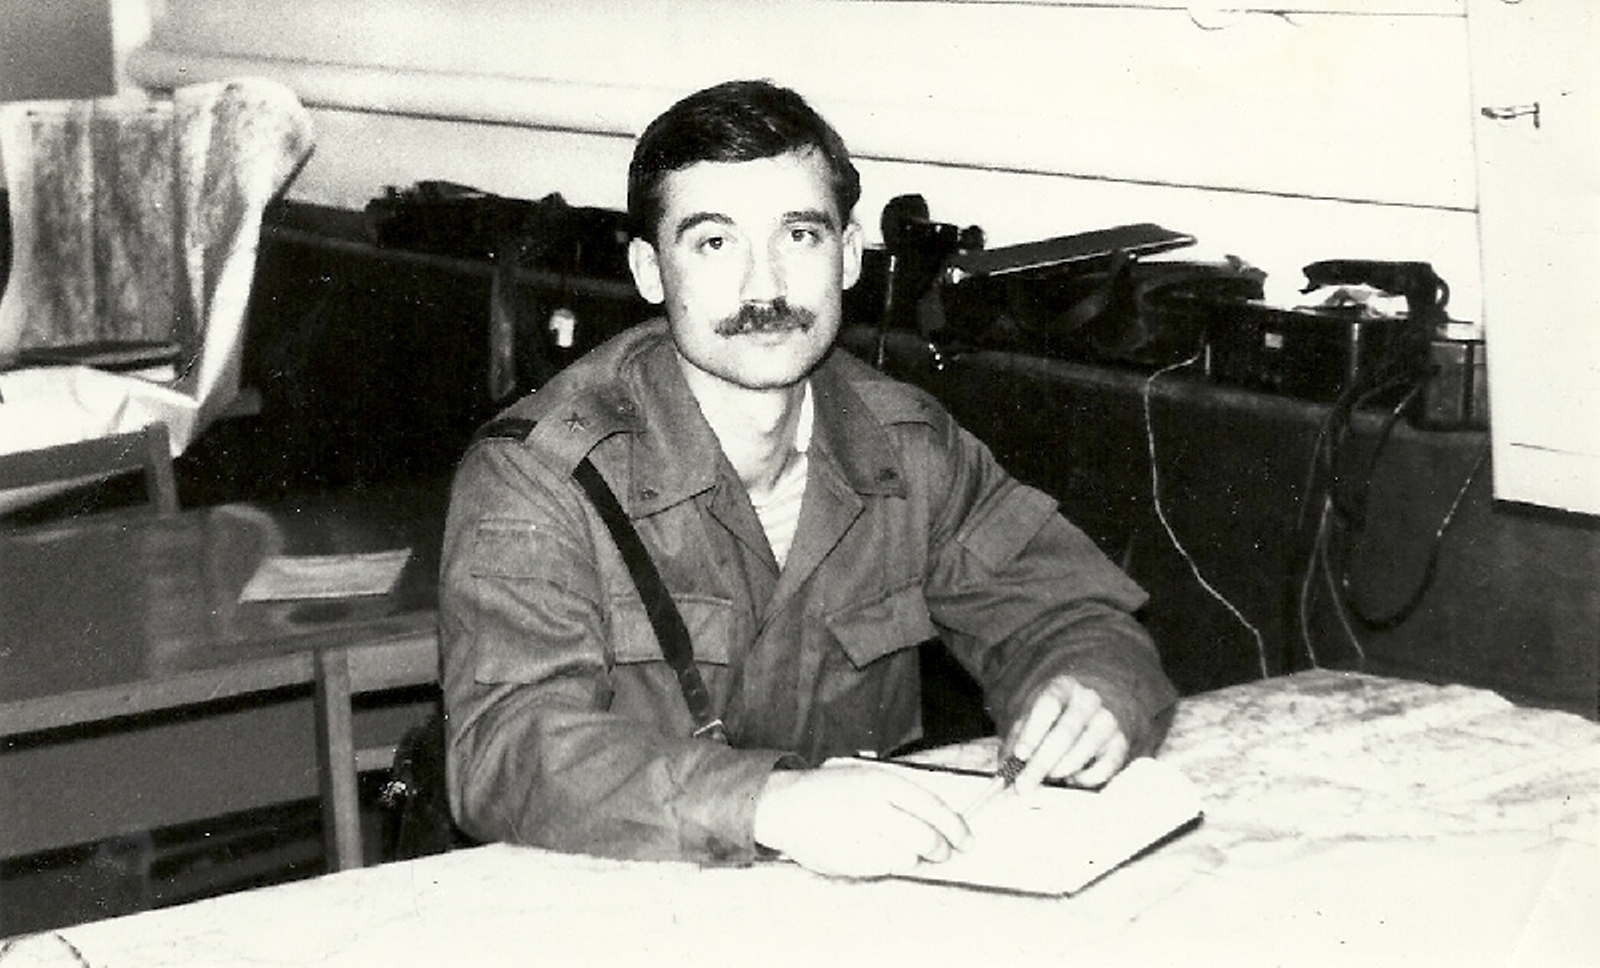 Майор И.А.Касьянов во время службы в Северной Группе Войск (Польша)